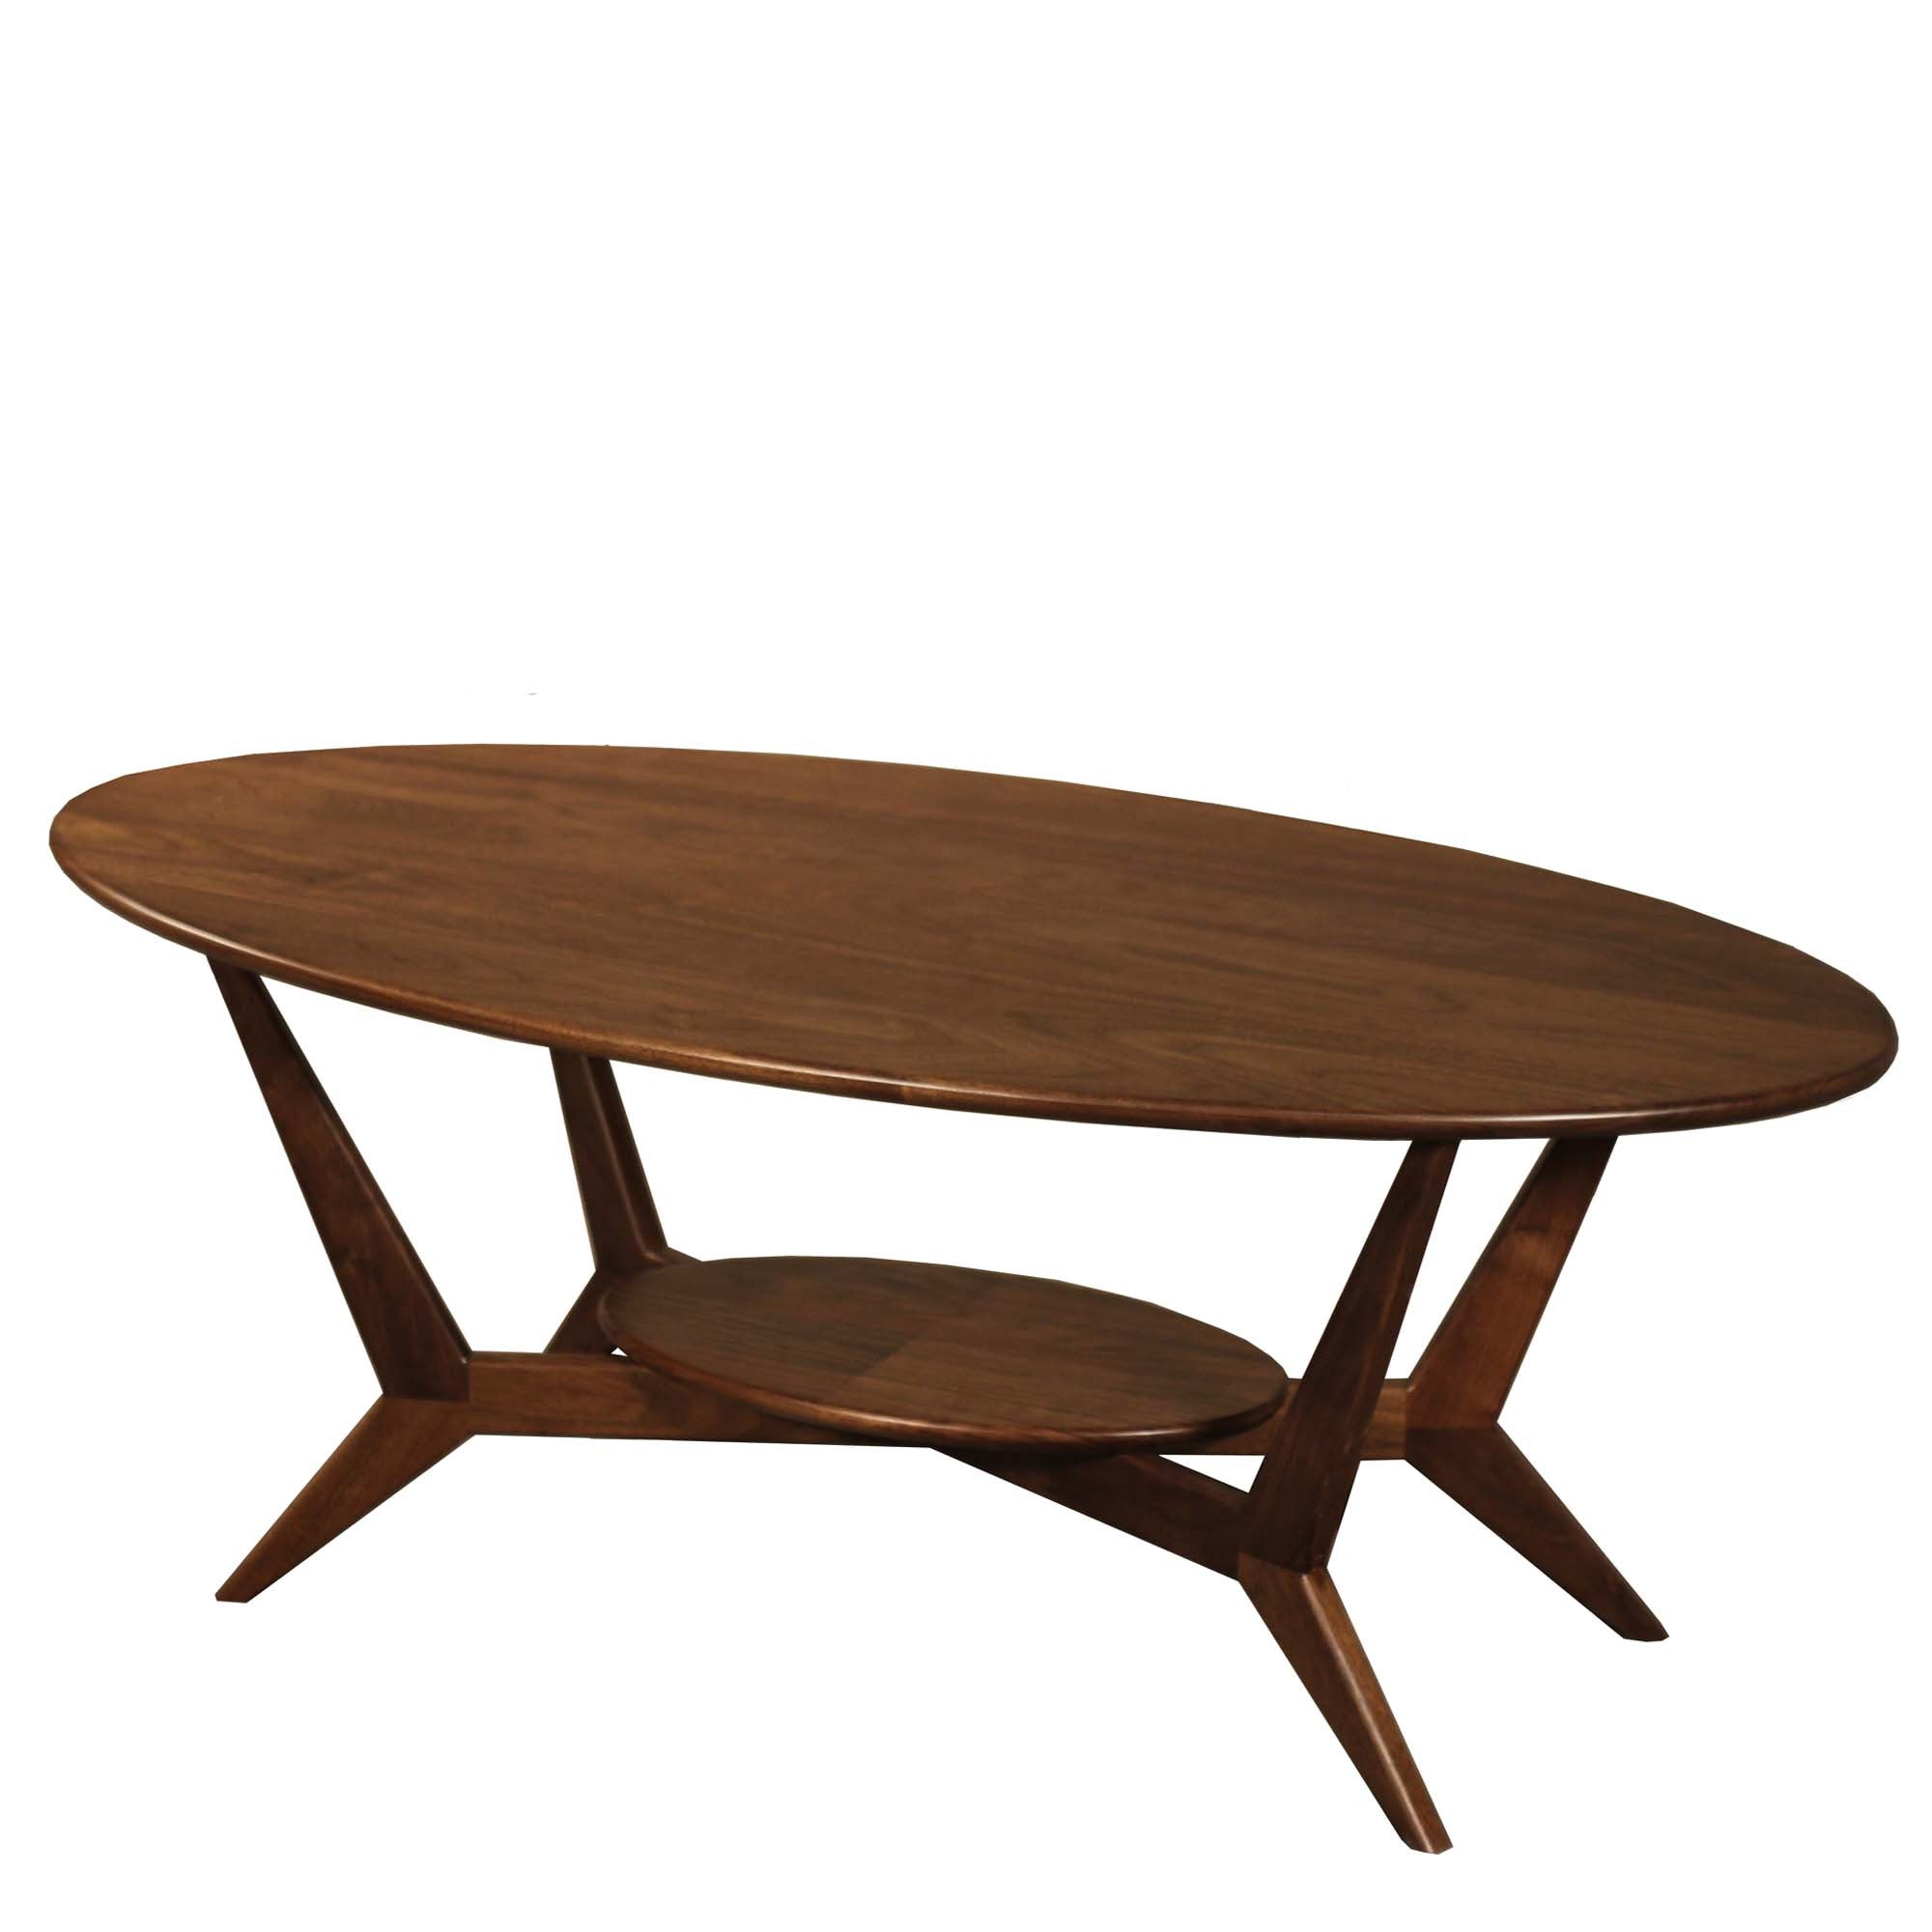 Mid Century Modern Coffee Table : Mid Century Coffee Table | Wood